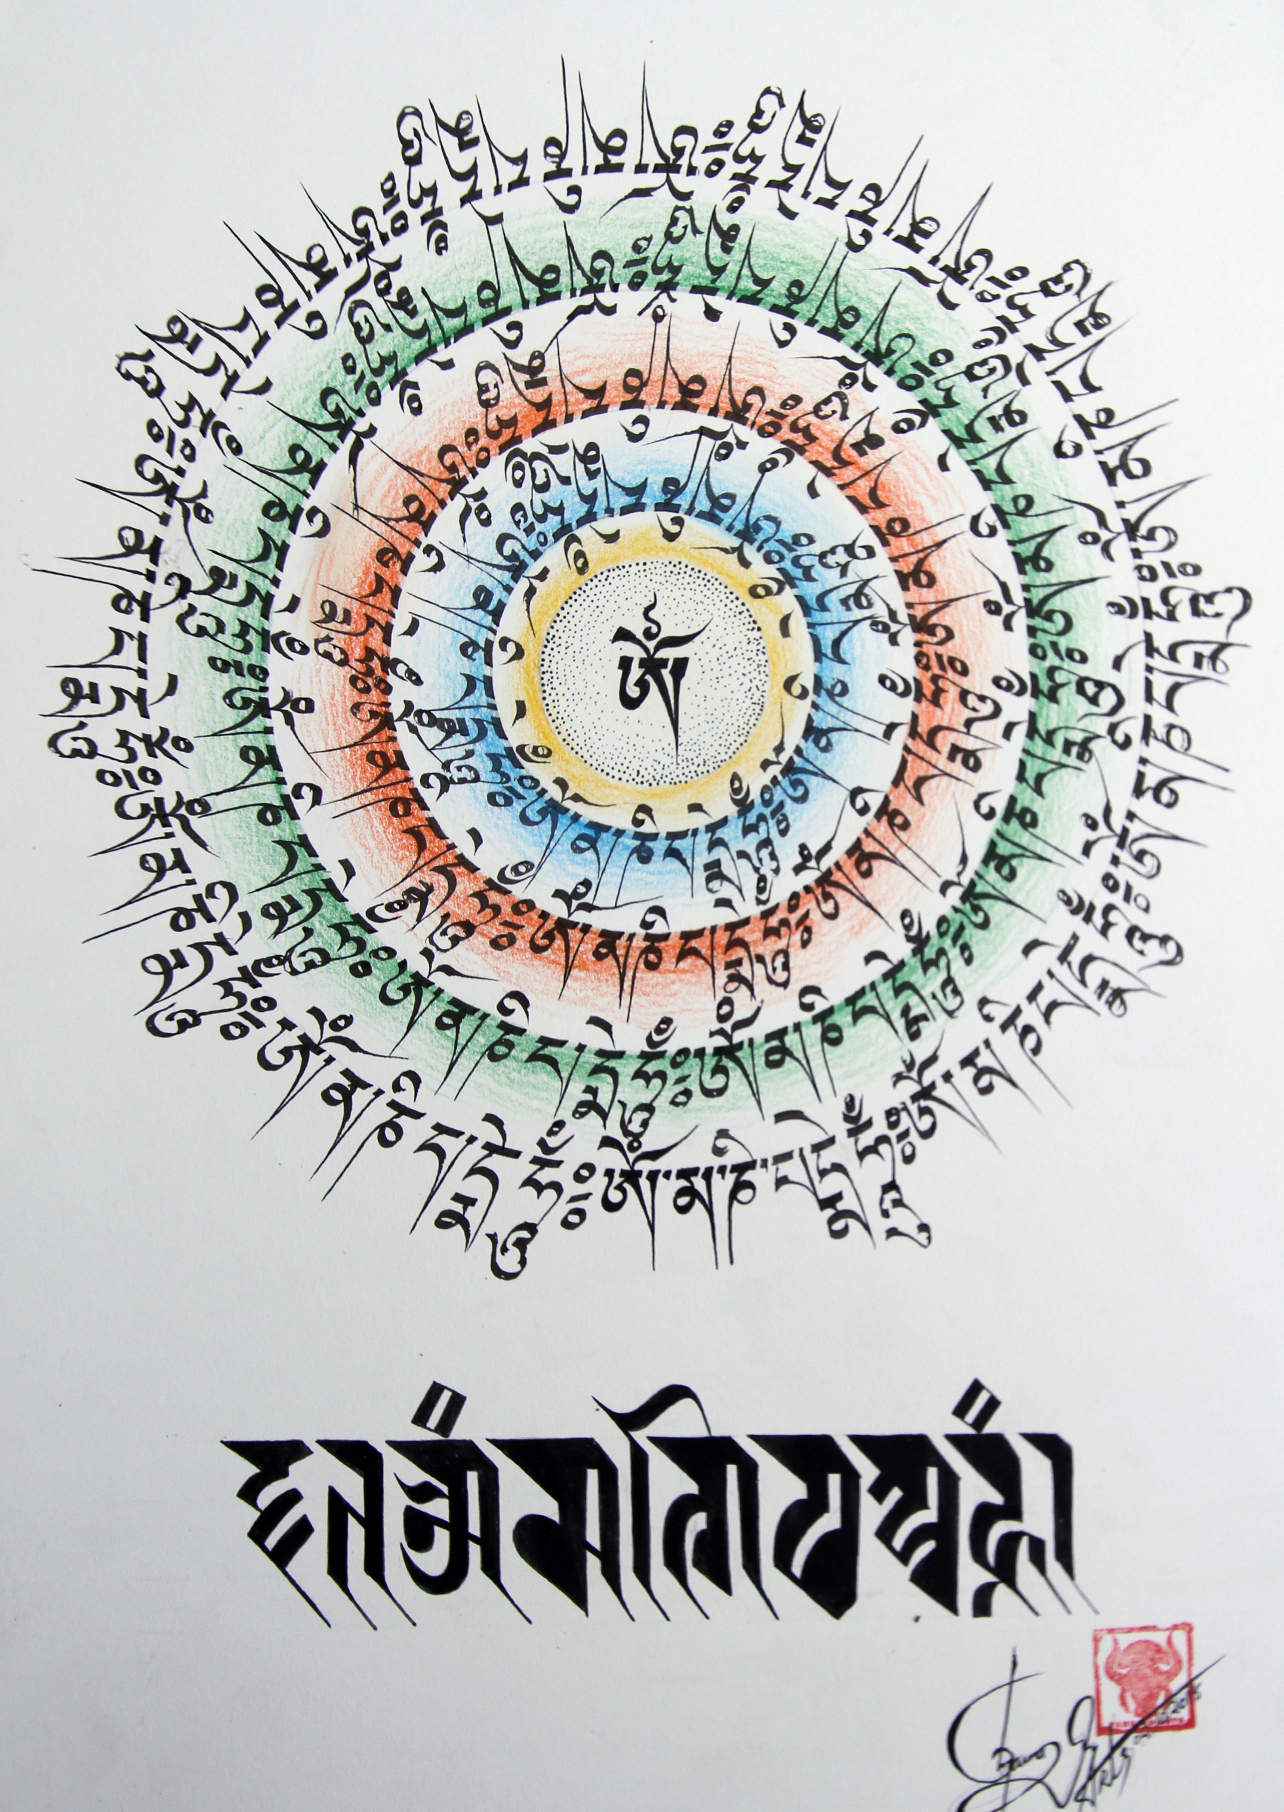 Tibetan Tattoo Ink